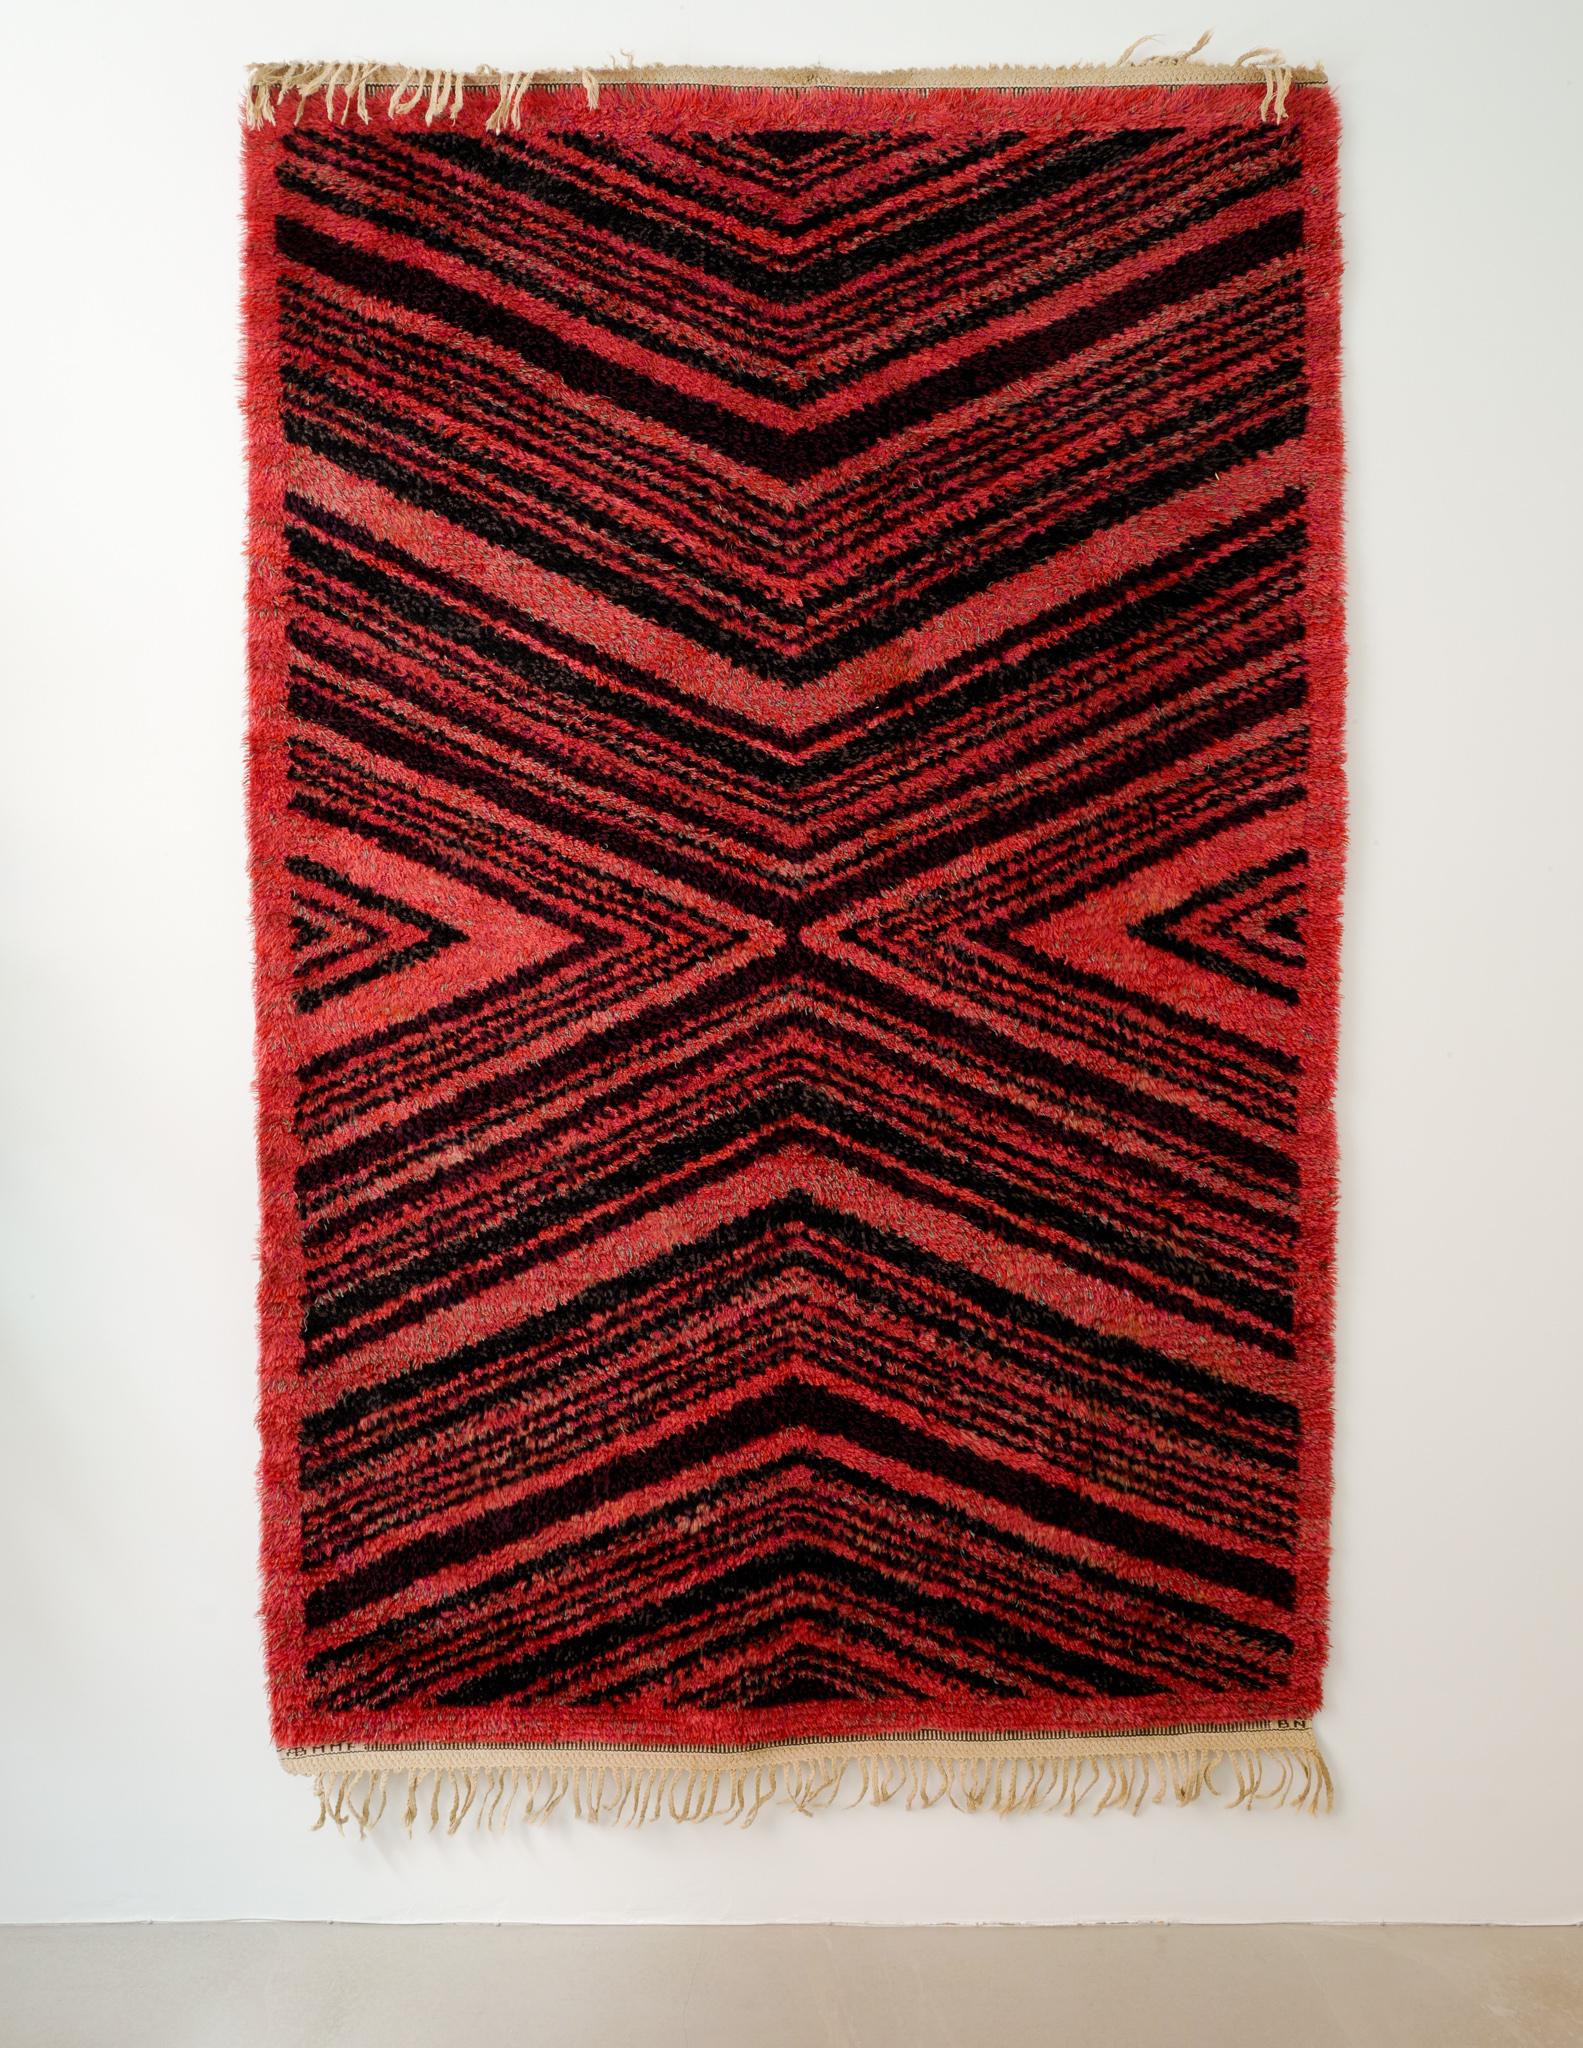 Très rare tapis en laine hirsute conçu par Barbro Nilsson pour Märta Måås-Fjetterström / 